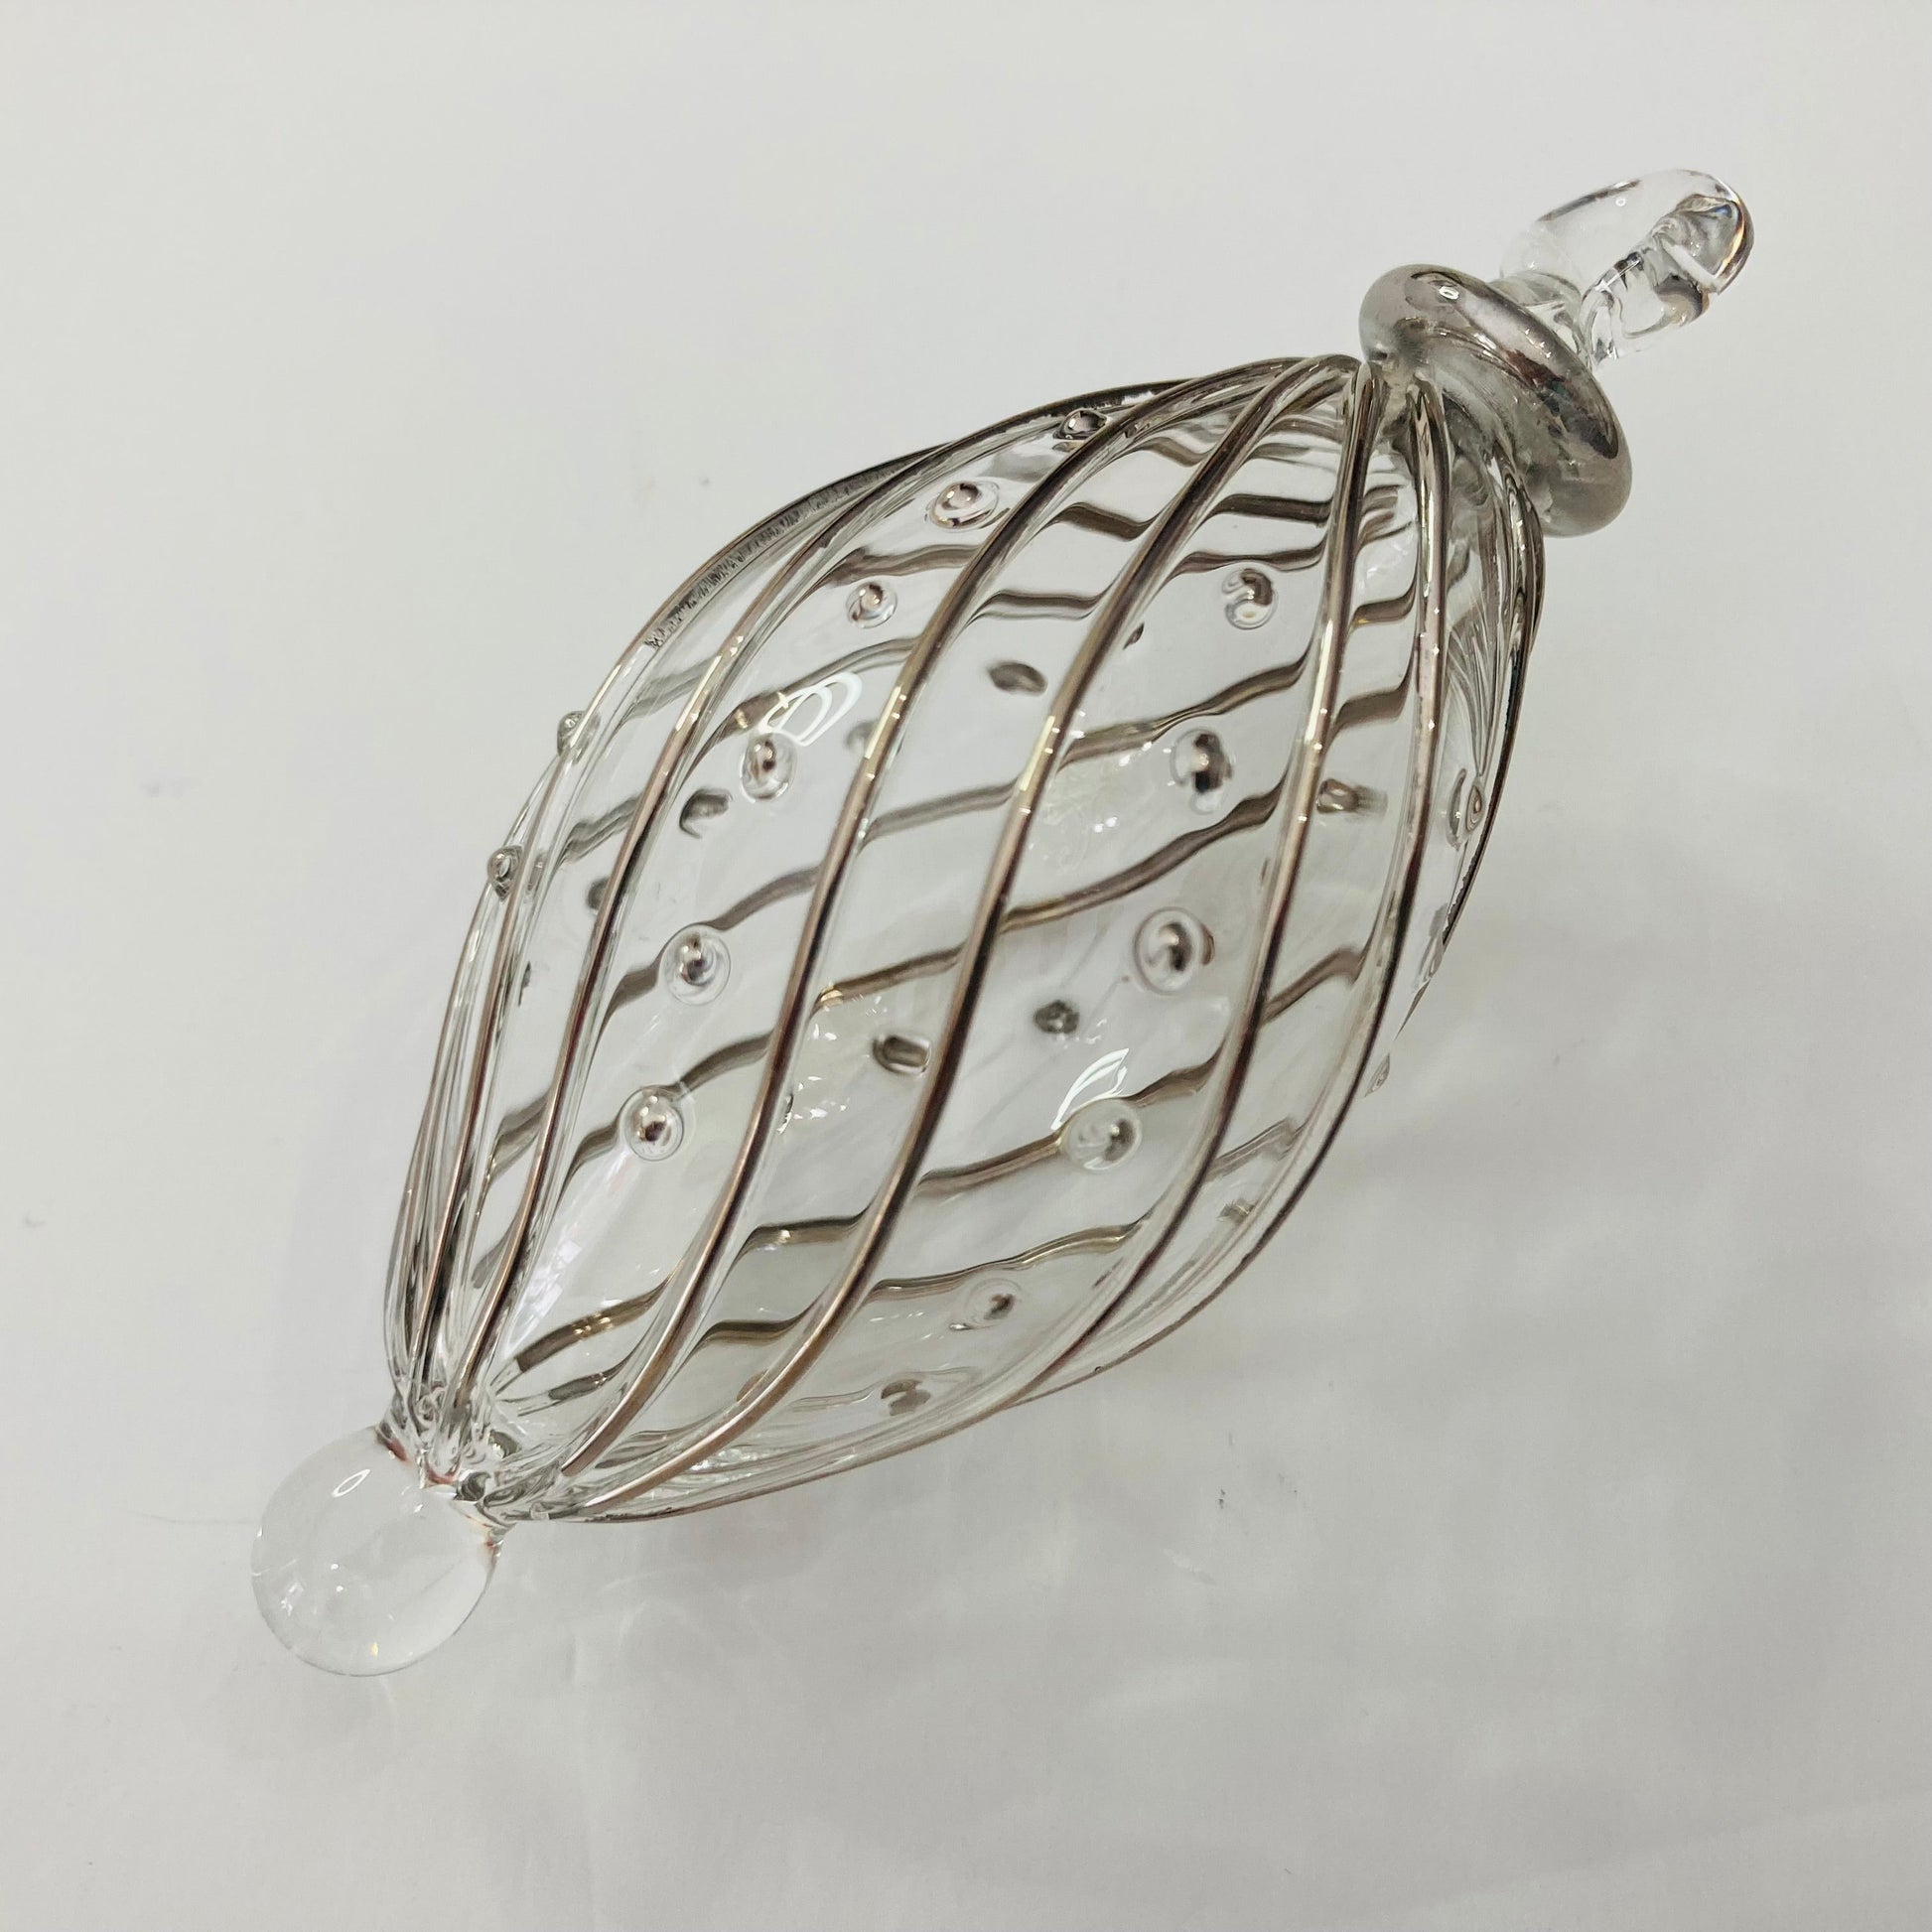 Blown Glass Small Ornament - Swirl Oval